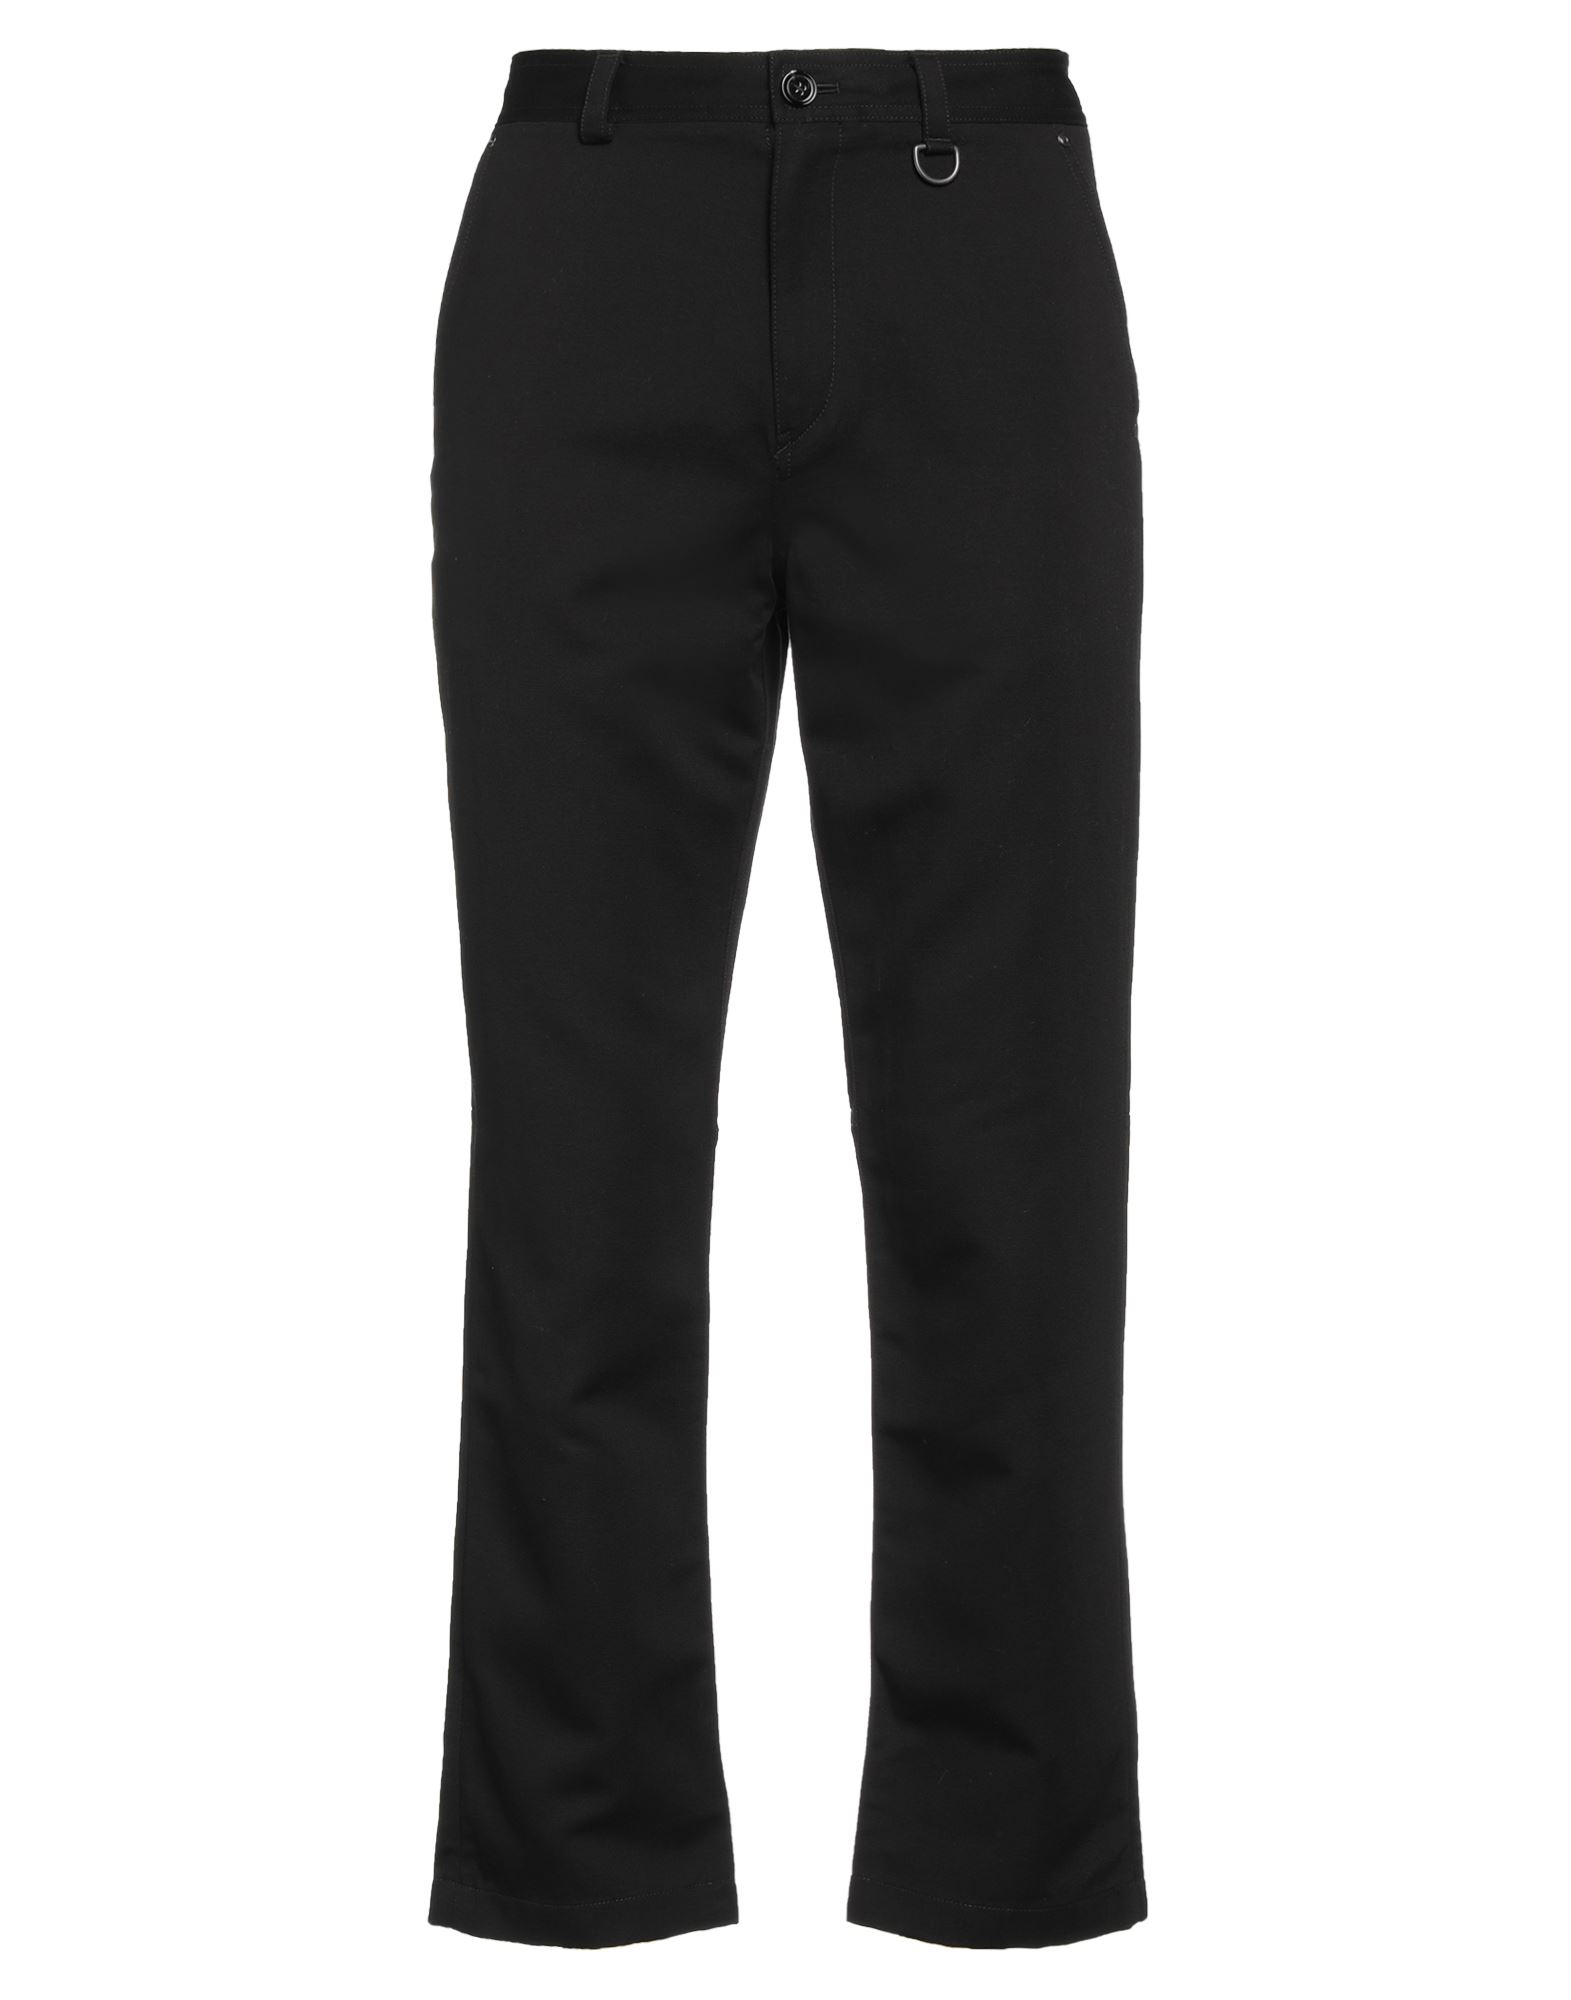 Burberry Man Pants Black Size 34 Cotton, Linen